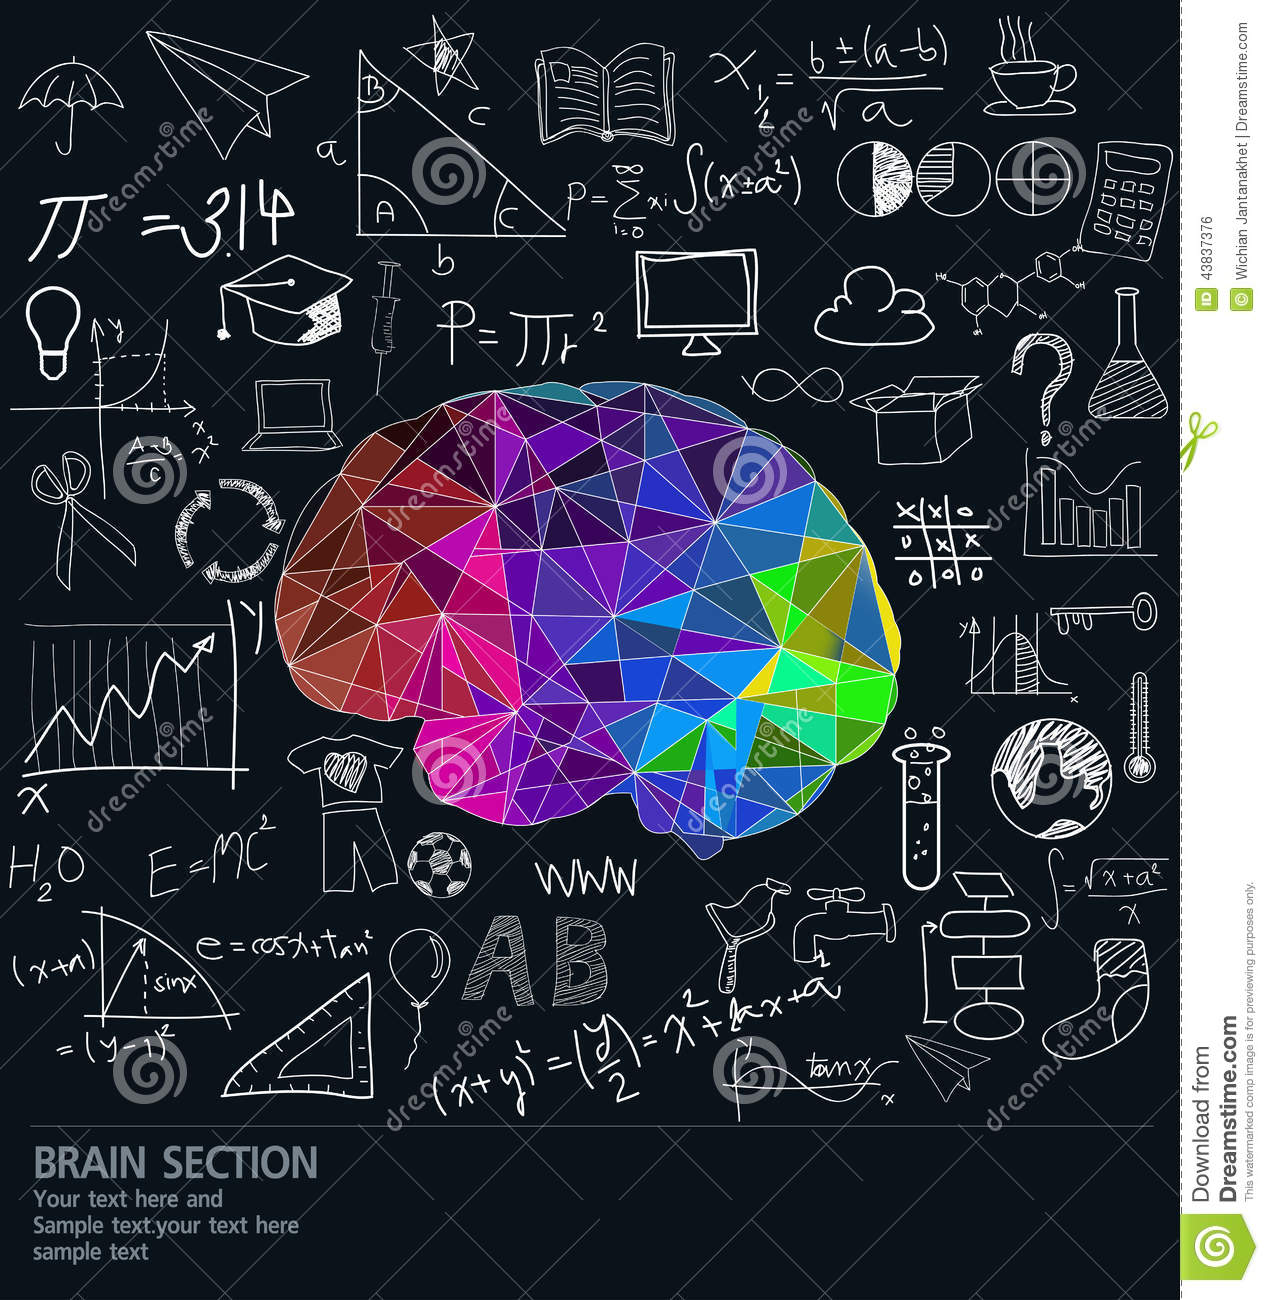 cerebro-con-muchas-ideas-43837376